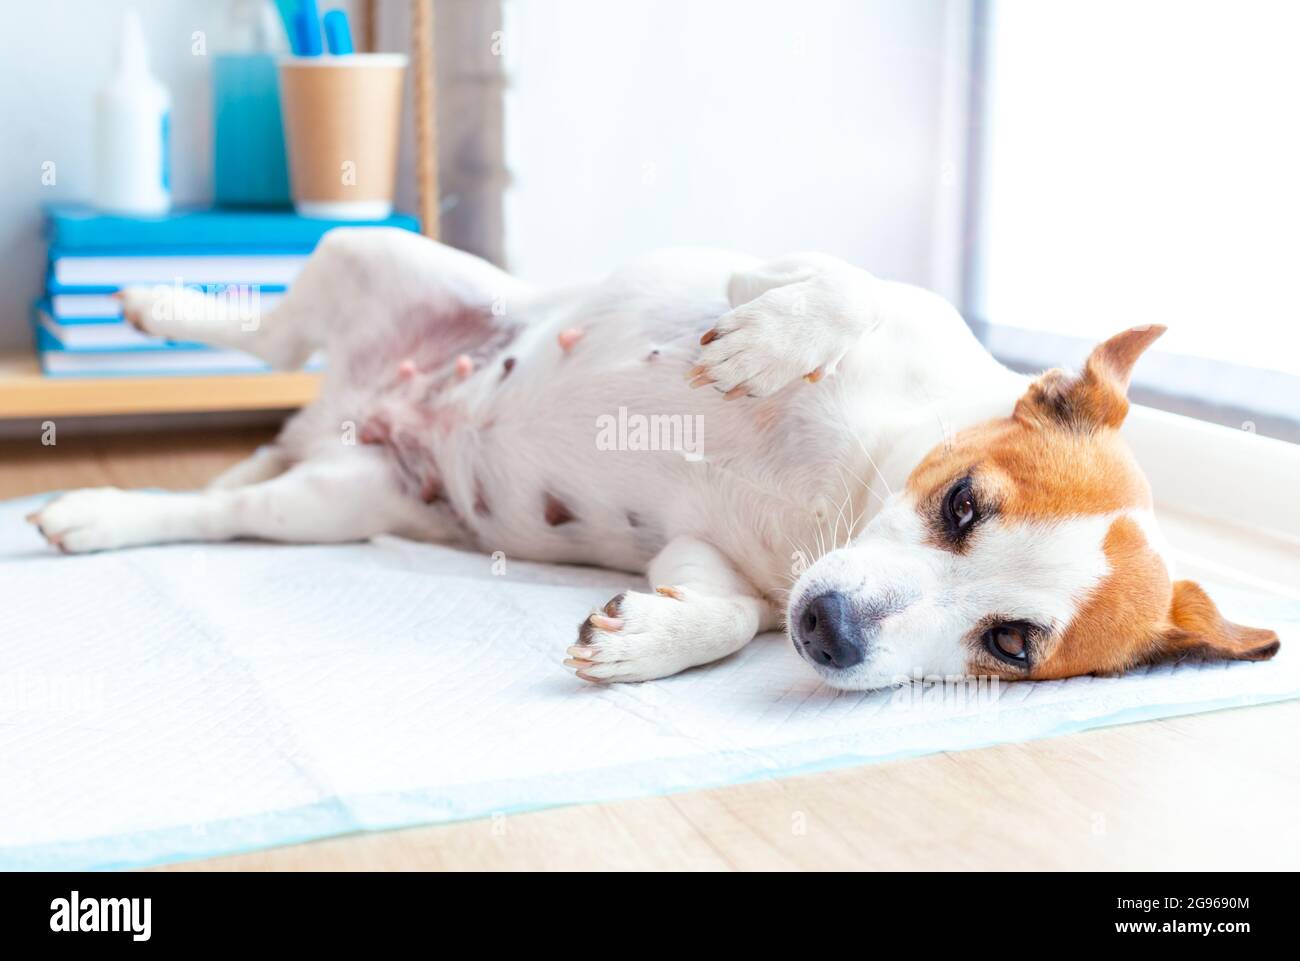 Un adorable chien Jack russell terrier allongé sur la table à la réception de la clinique vétérinaire. Le chien est en attente d'examen par le médecin vétérinaire. Animaux de compagnie Banque D'Images